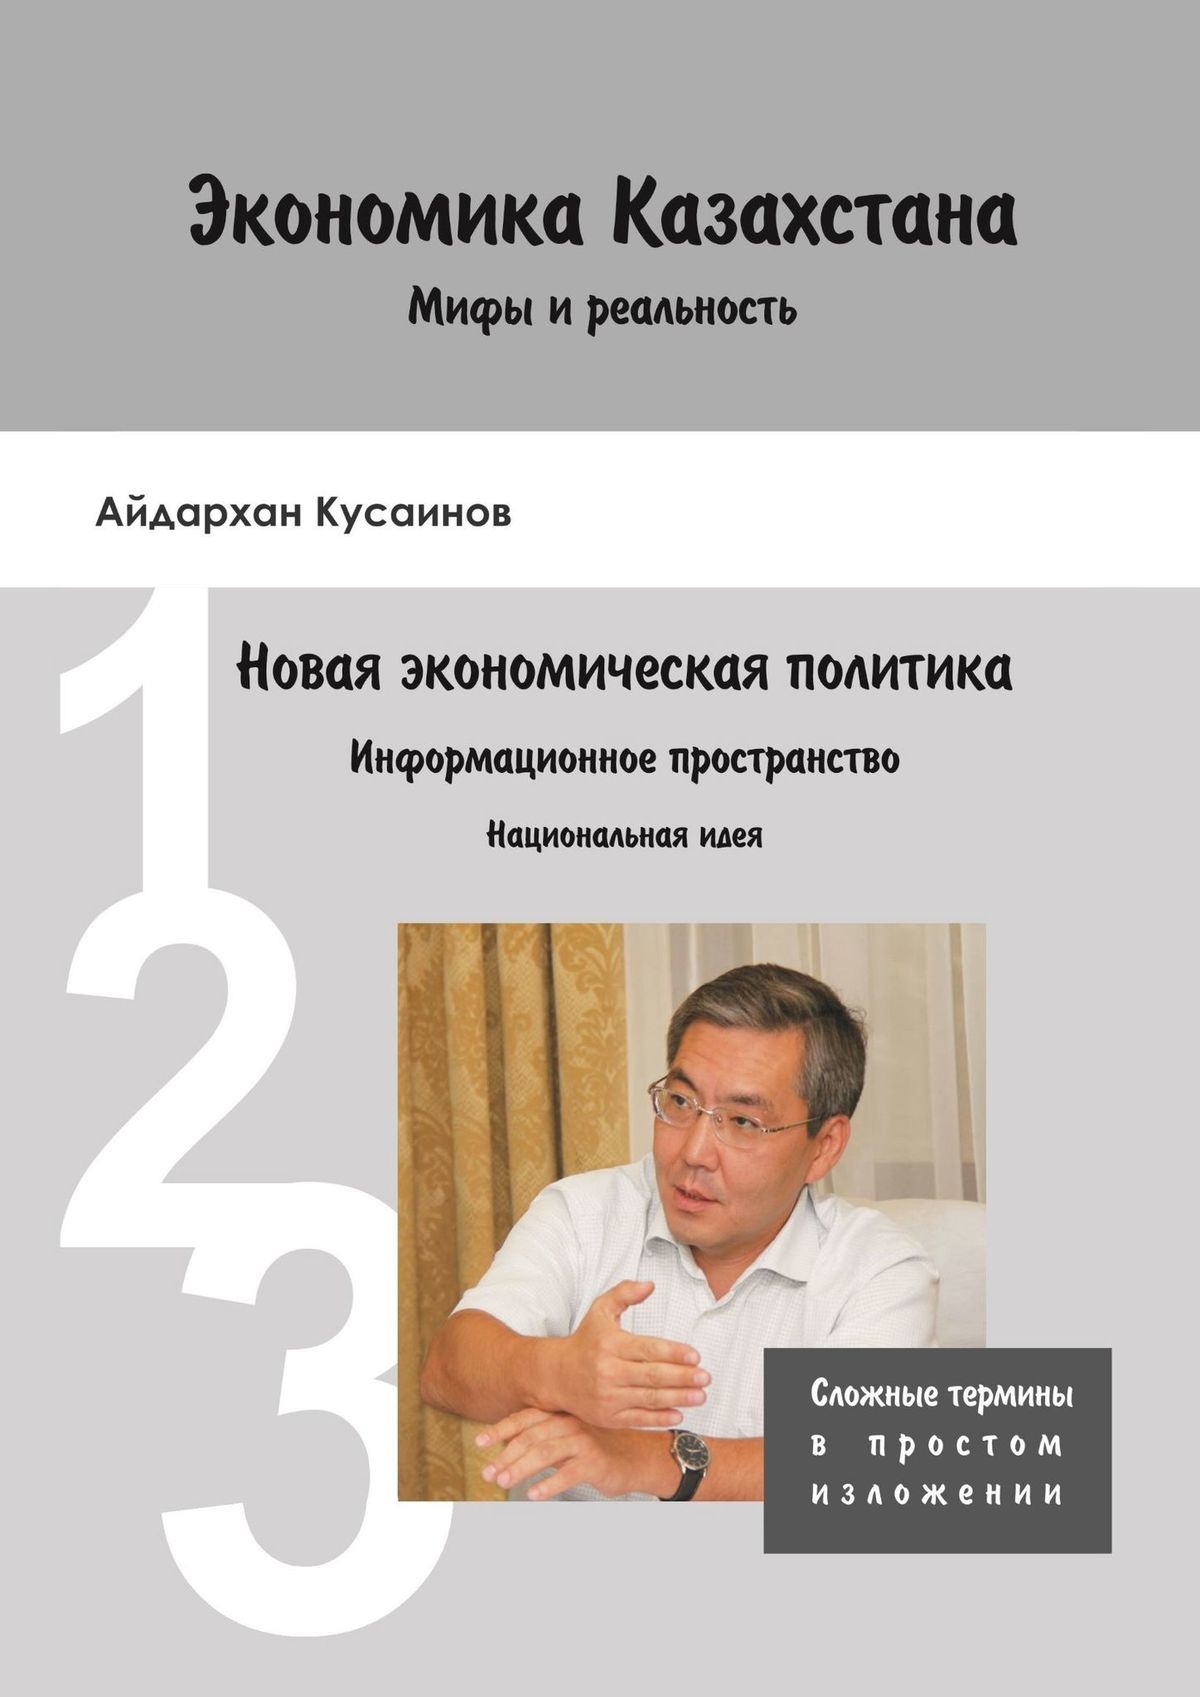 Экономика Казахстана. Мифы и реальность. Новая экономическая политика Информационное пространство. Национальная идея